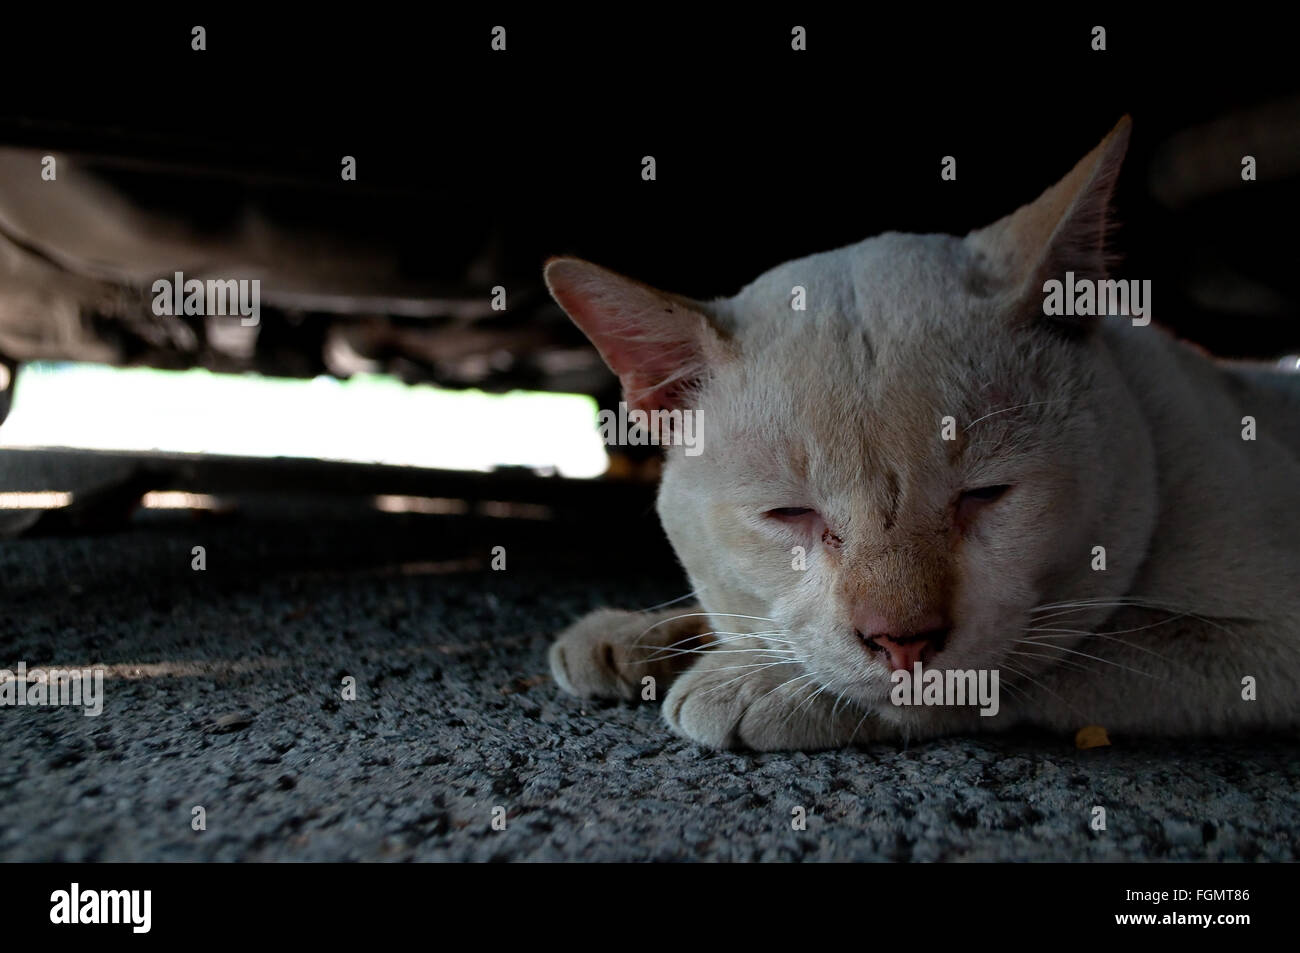 Einsam und traurig verlassene alte schmutzige weiße Katze versteckt unter einem Fahrzeug Schatten abstrahiert wegschauen mit hellblauen Augen. Stockfoto